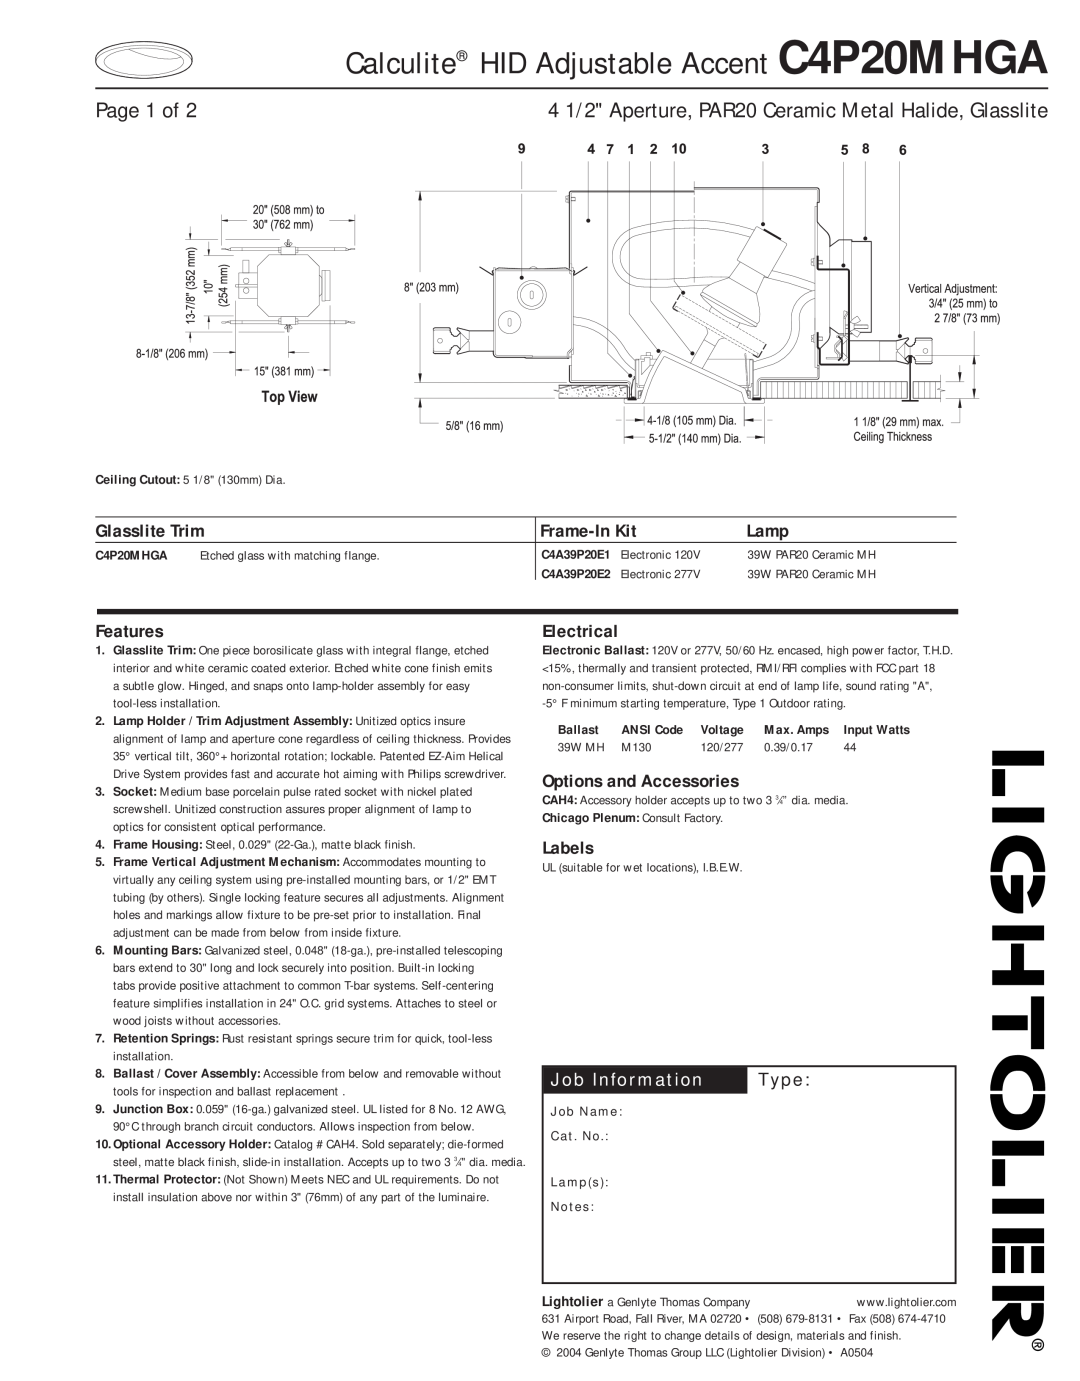 Lightolier manual Calculite HID Adjustable Accent C4P20MHGA, 4 1/2 Aperture, PAR20 Ceramic Metal Halide, Glasslite 